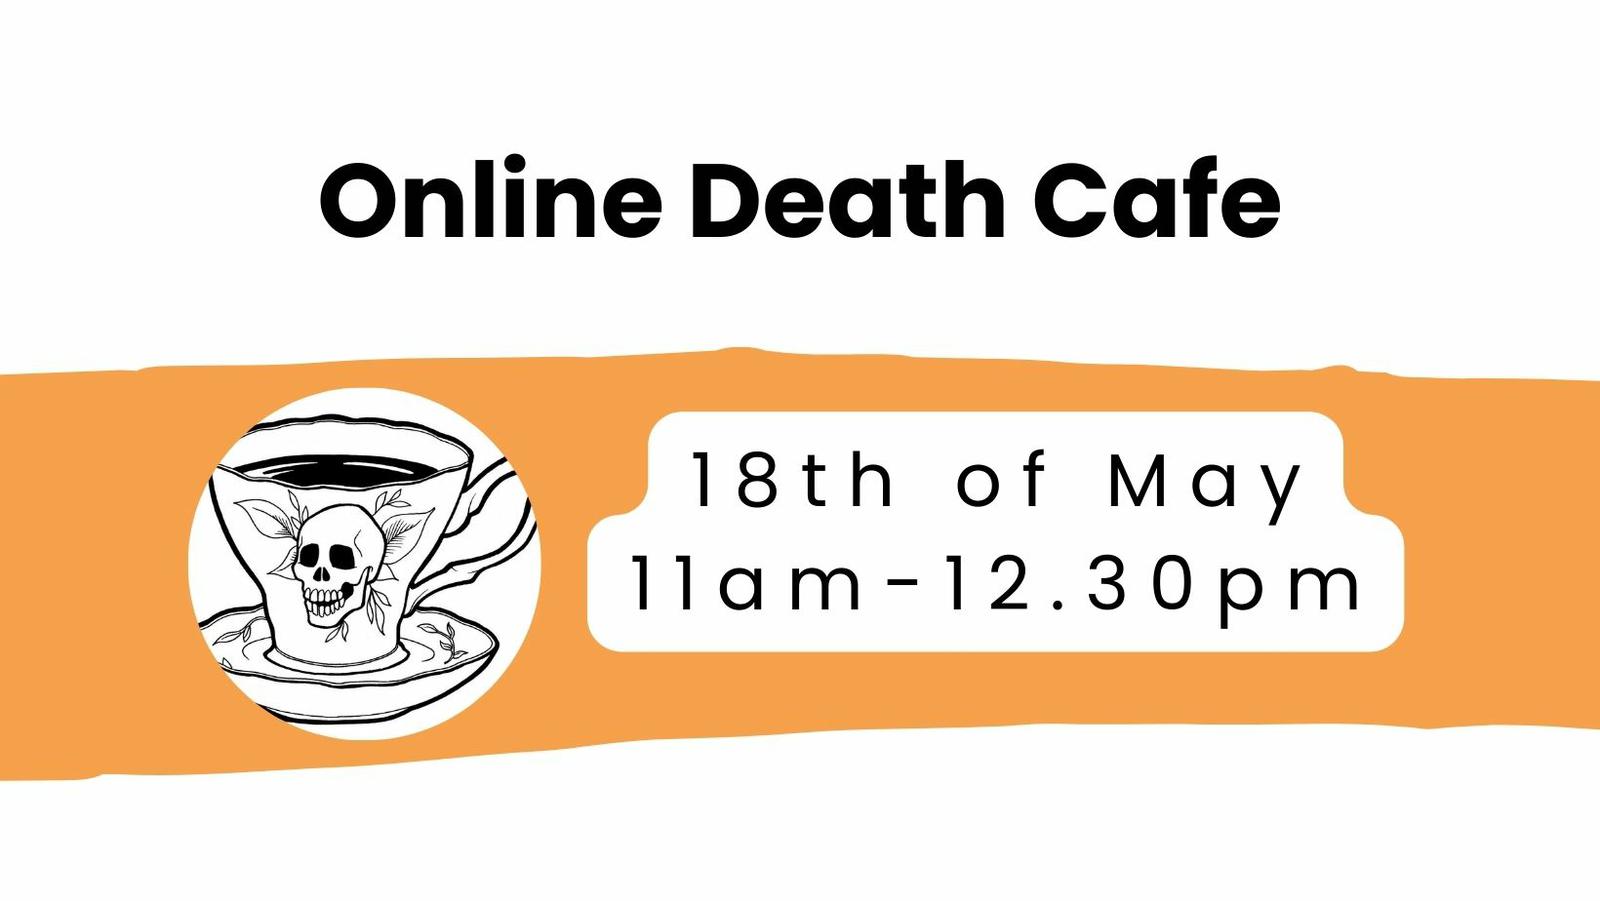 Online Death Cafe